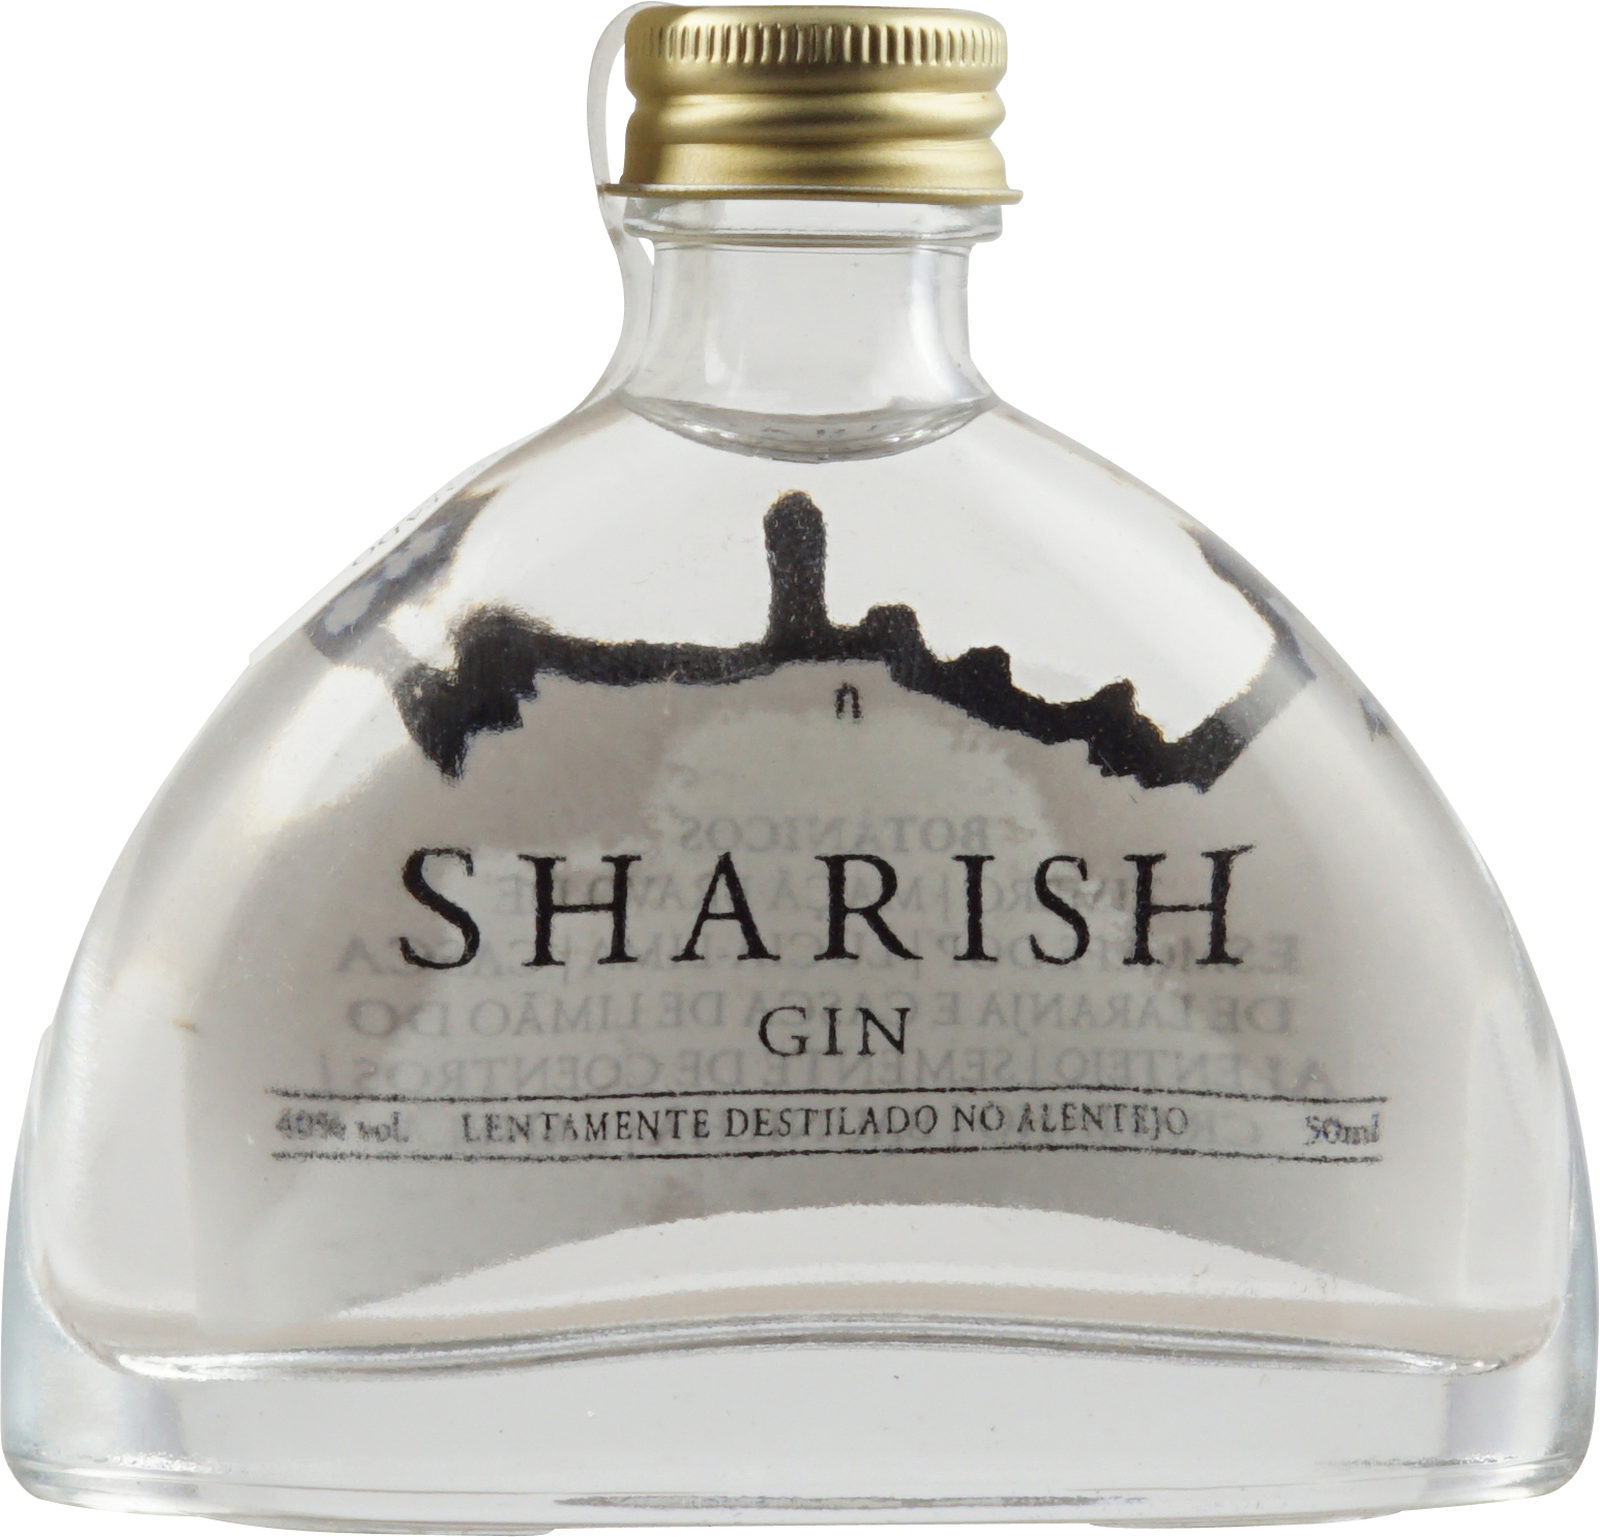 Sharish Original Gin aus Portugal hier im Shop kaufen